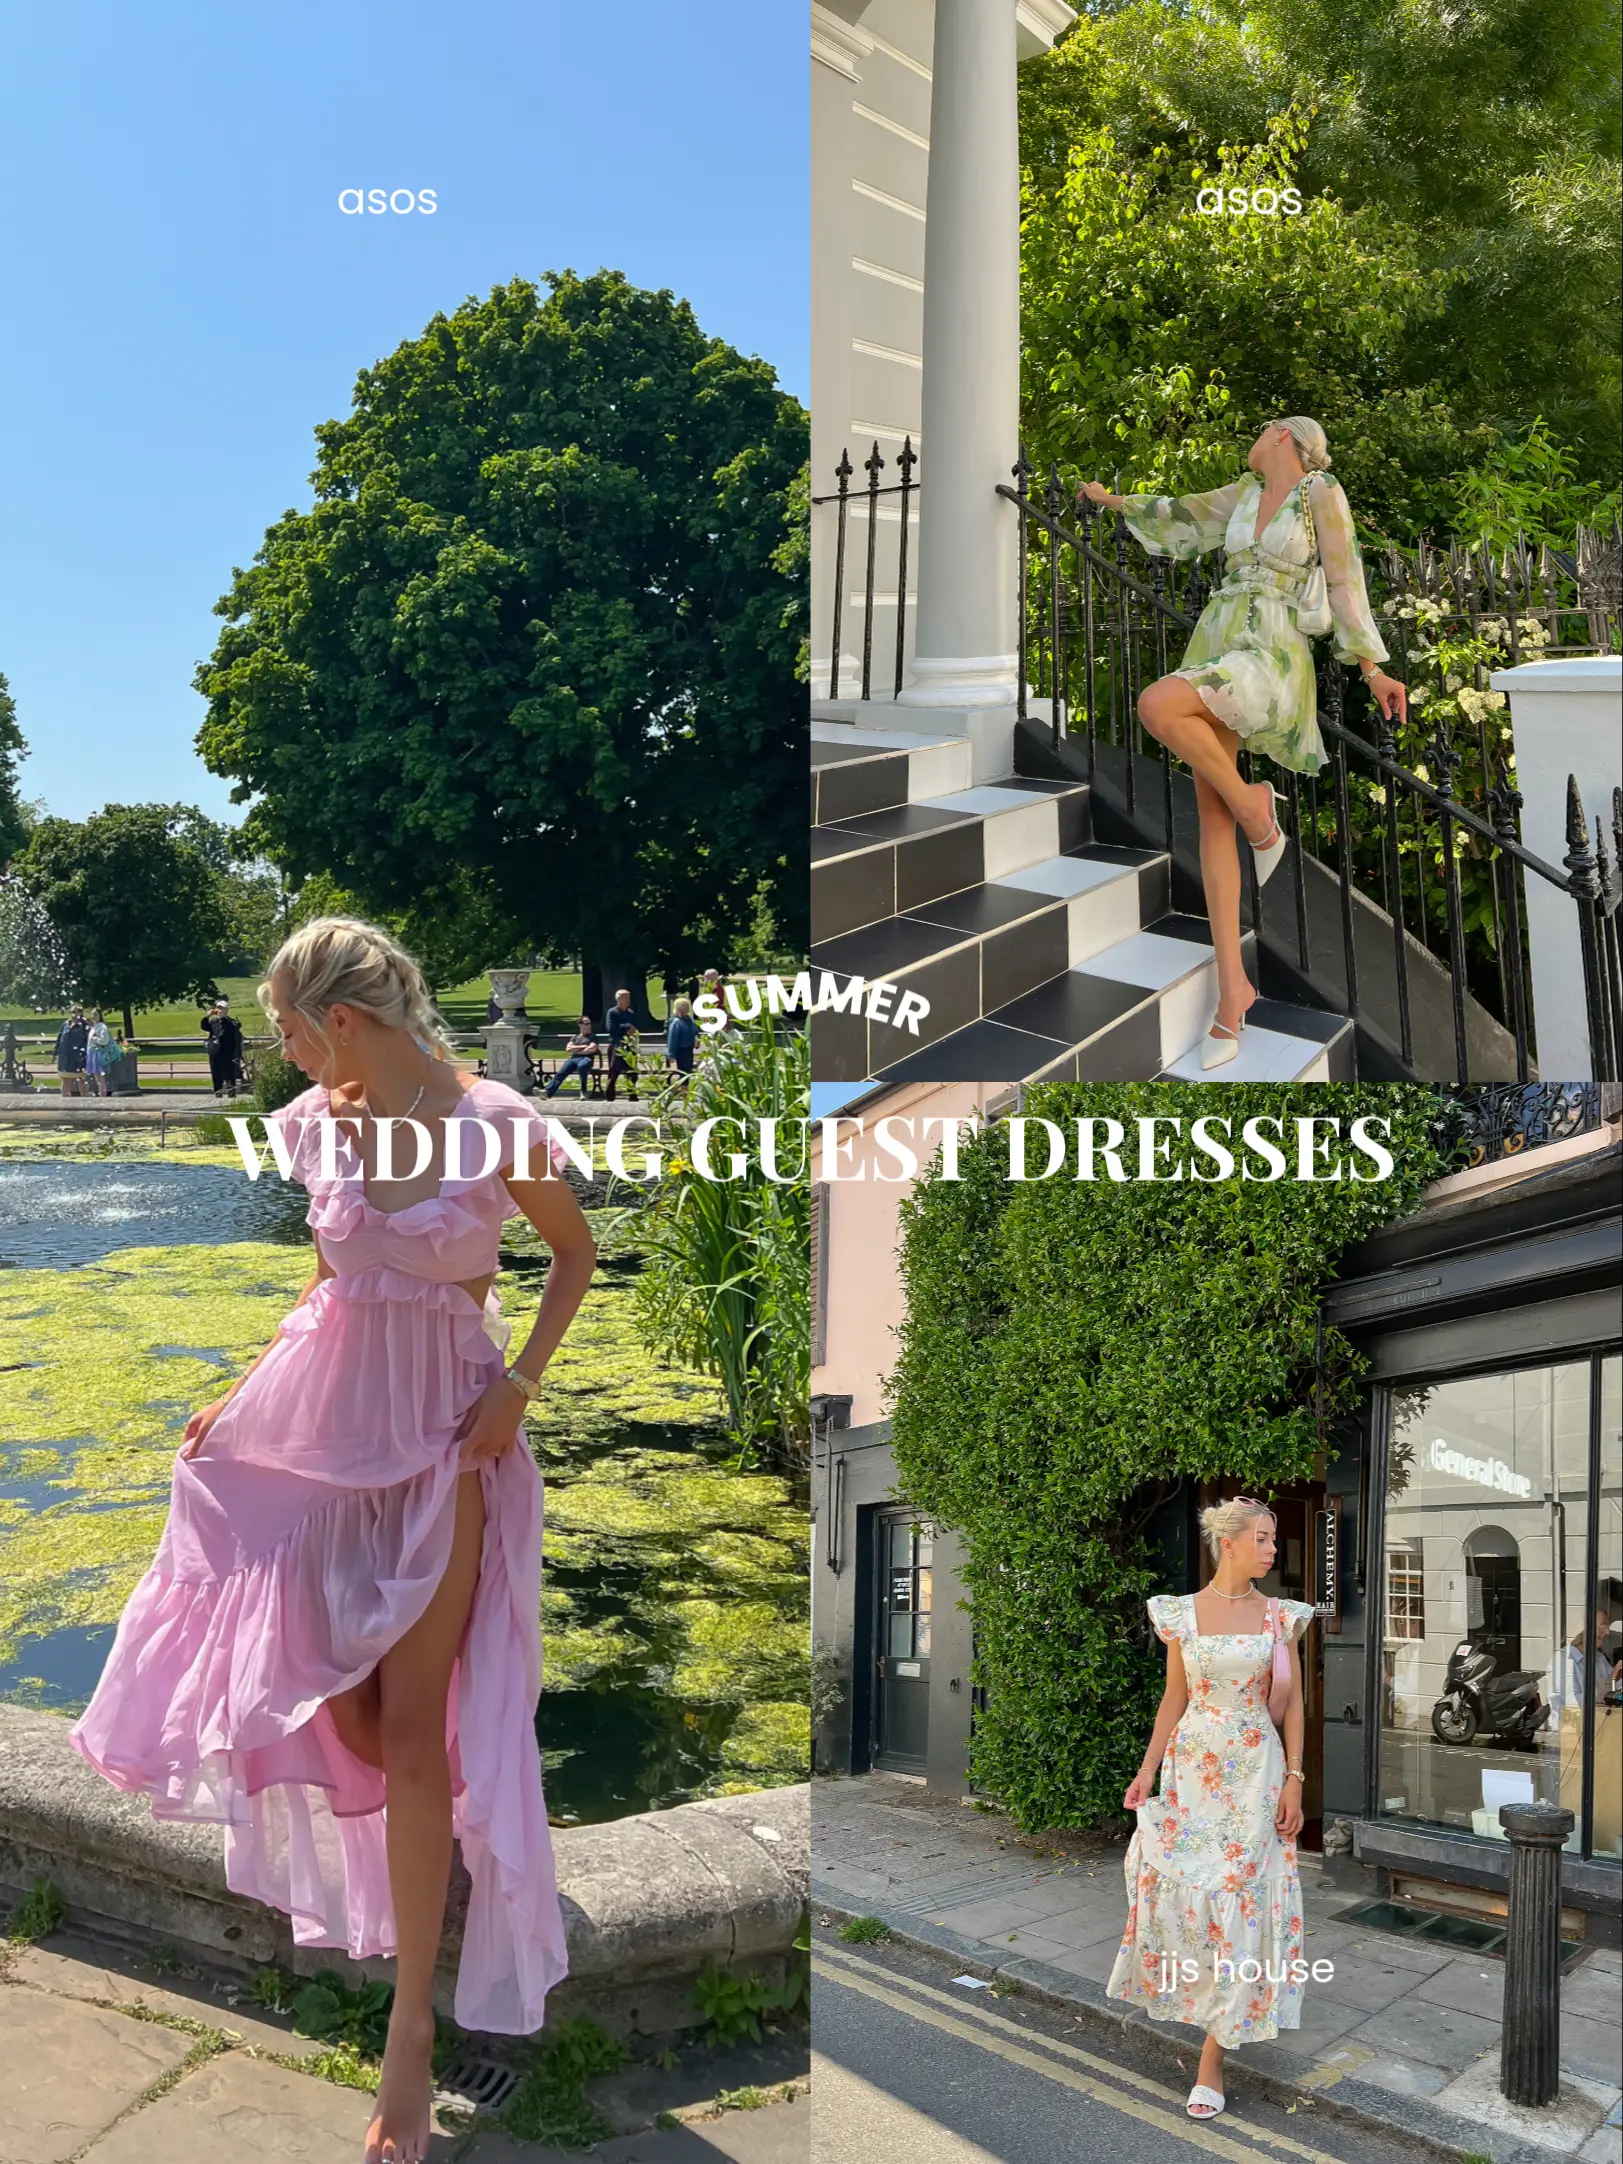 CARA Summer Wedding Guest Dress – The Linen Atelier